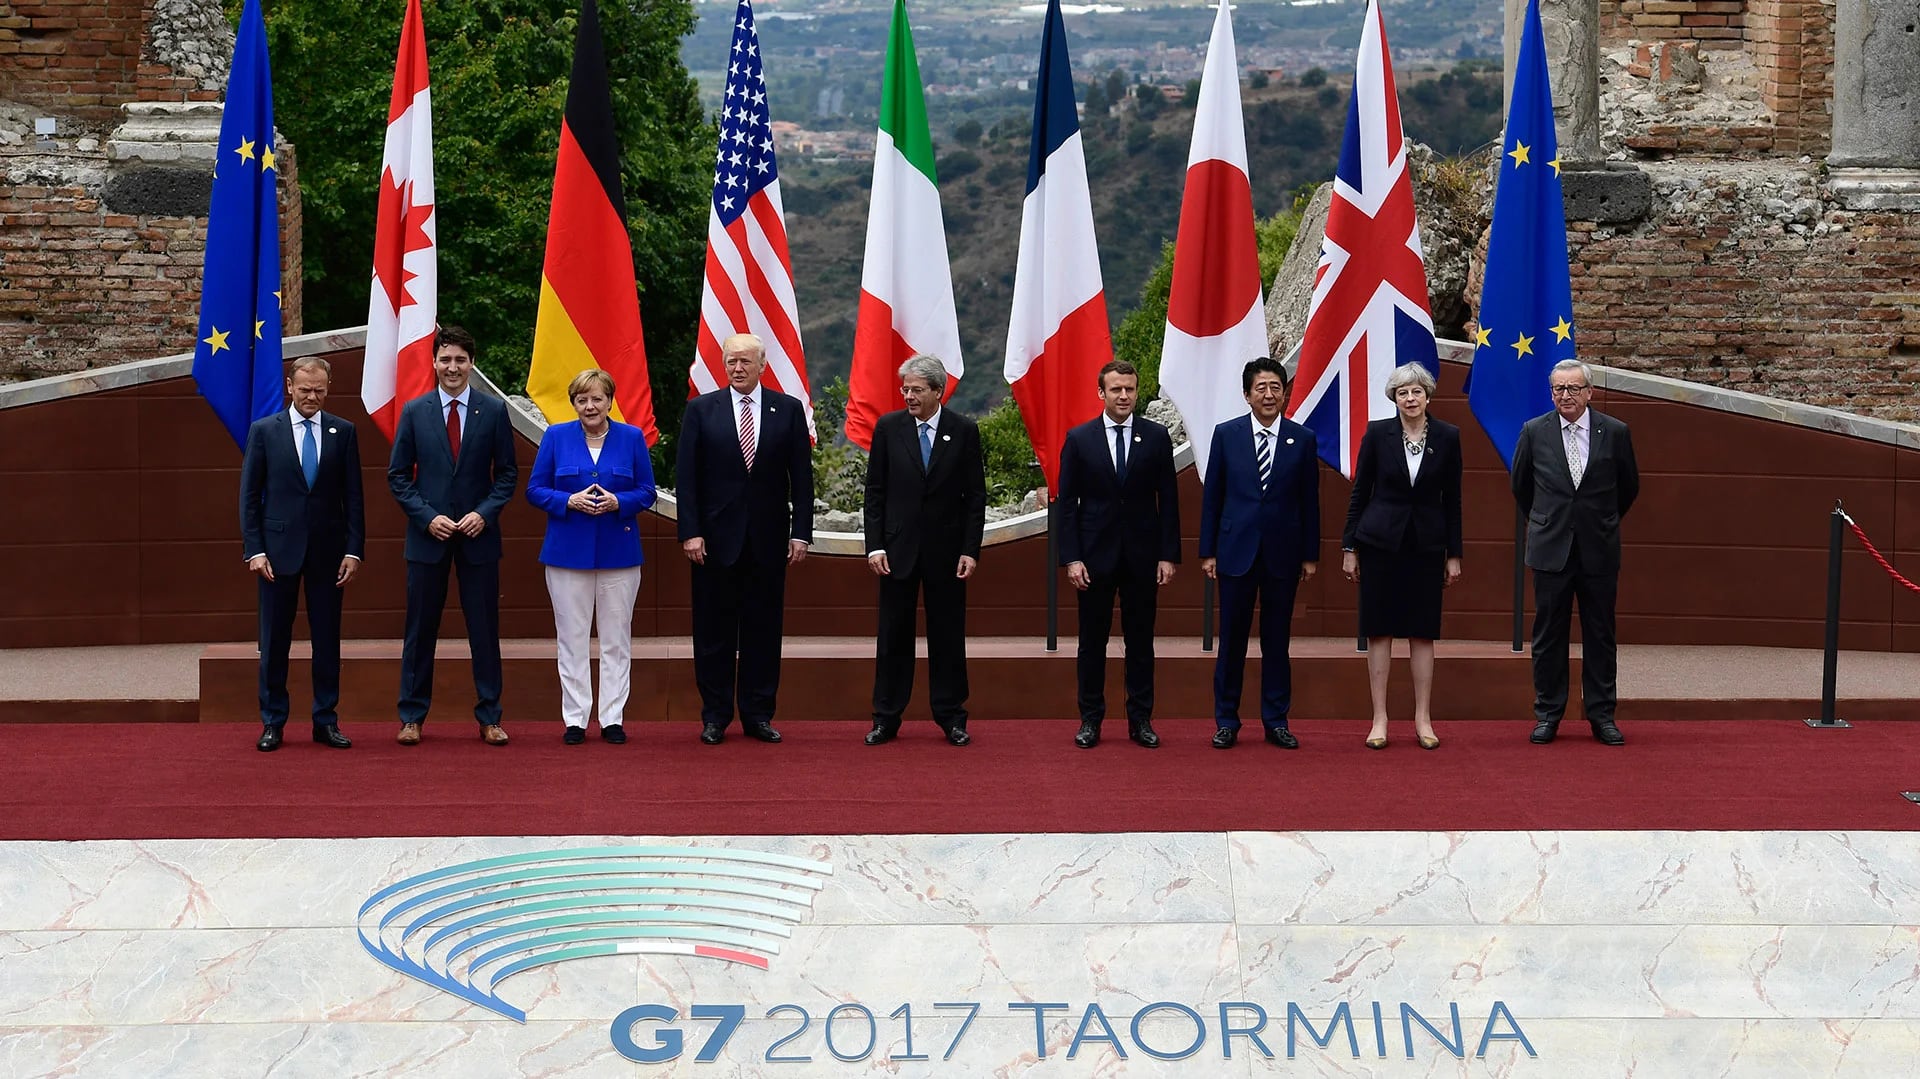 Líderes del G-7, que incluye a Estados Unidos y Alemania, en su última reunión en Italia (AFP)